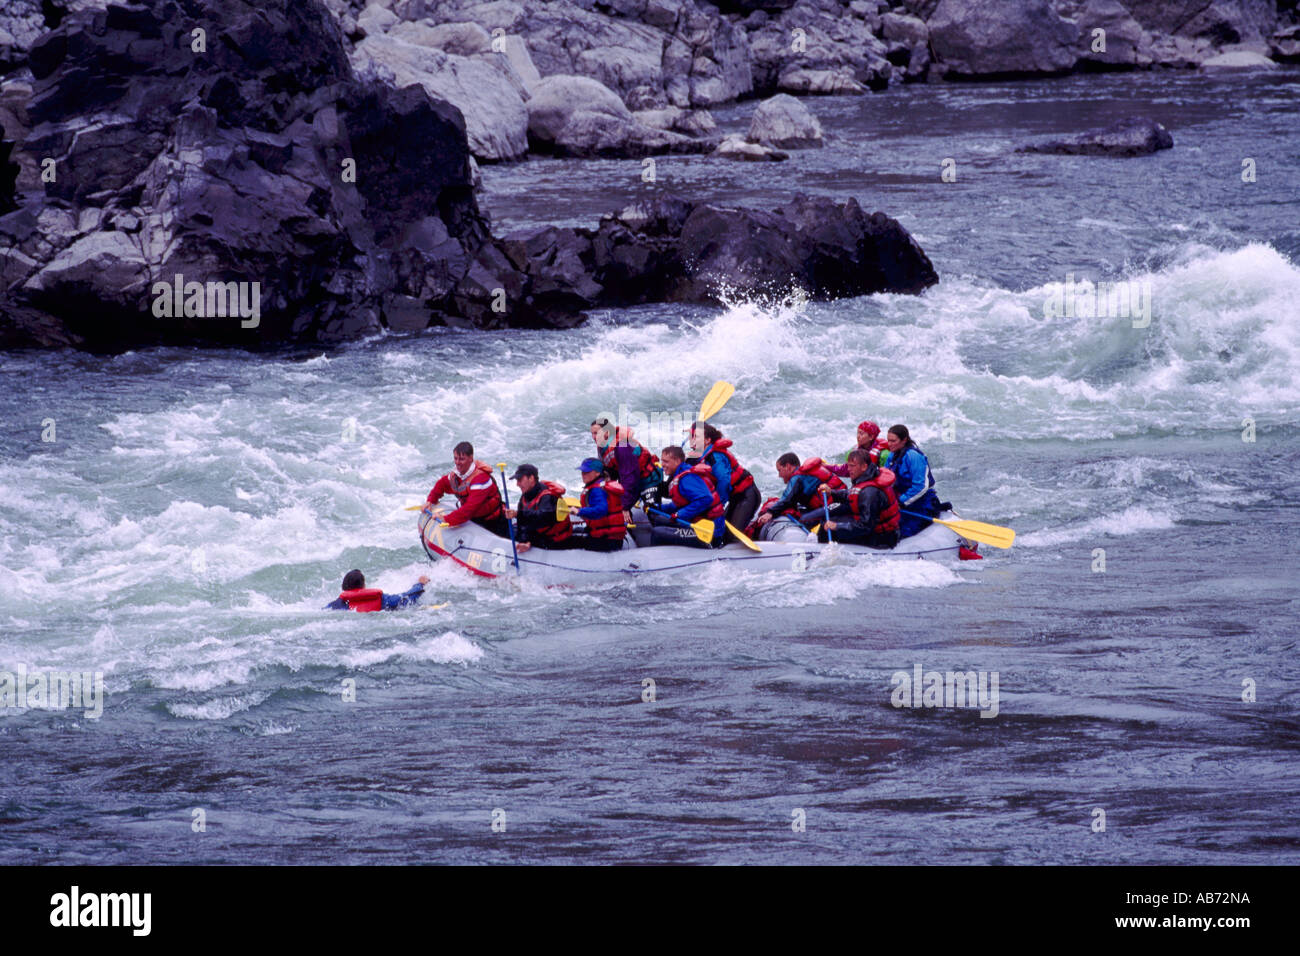 Cerca del Río Thompson Lytton, BC, British Columbia, Canadá - El hombre por la borda en White Water Rafting / accidente Foto de stock